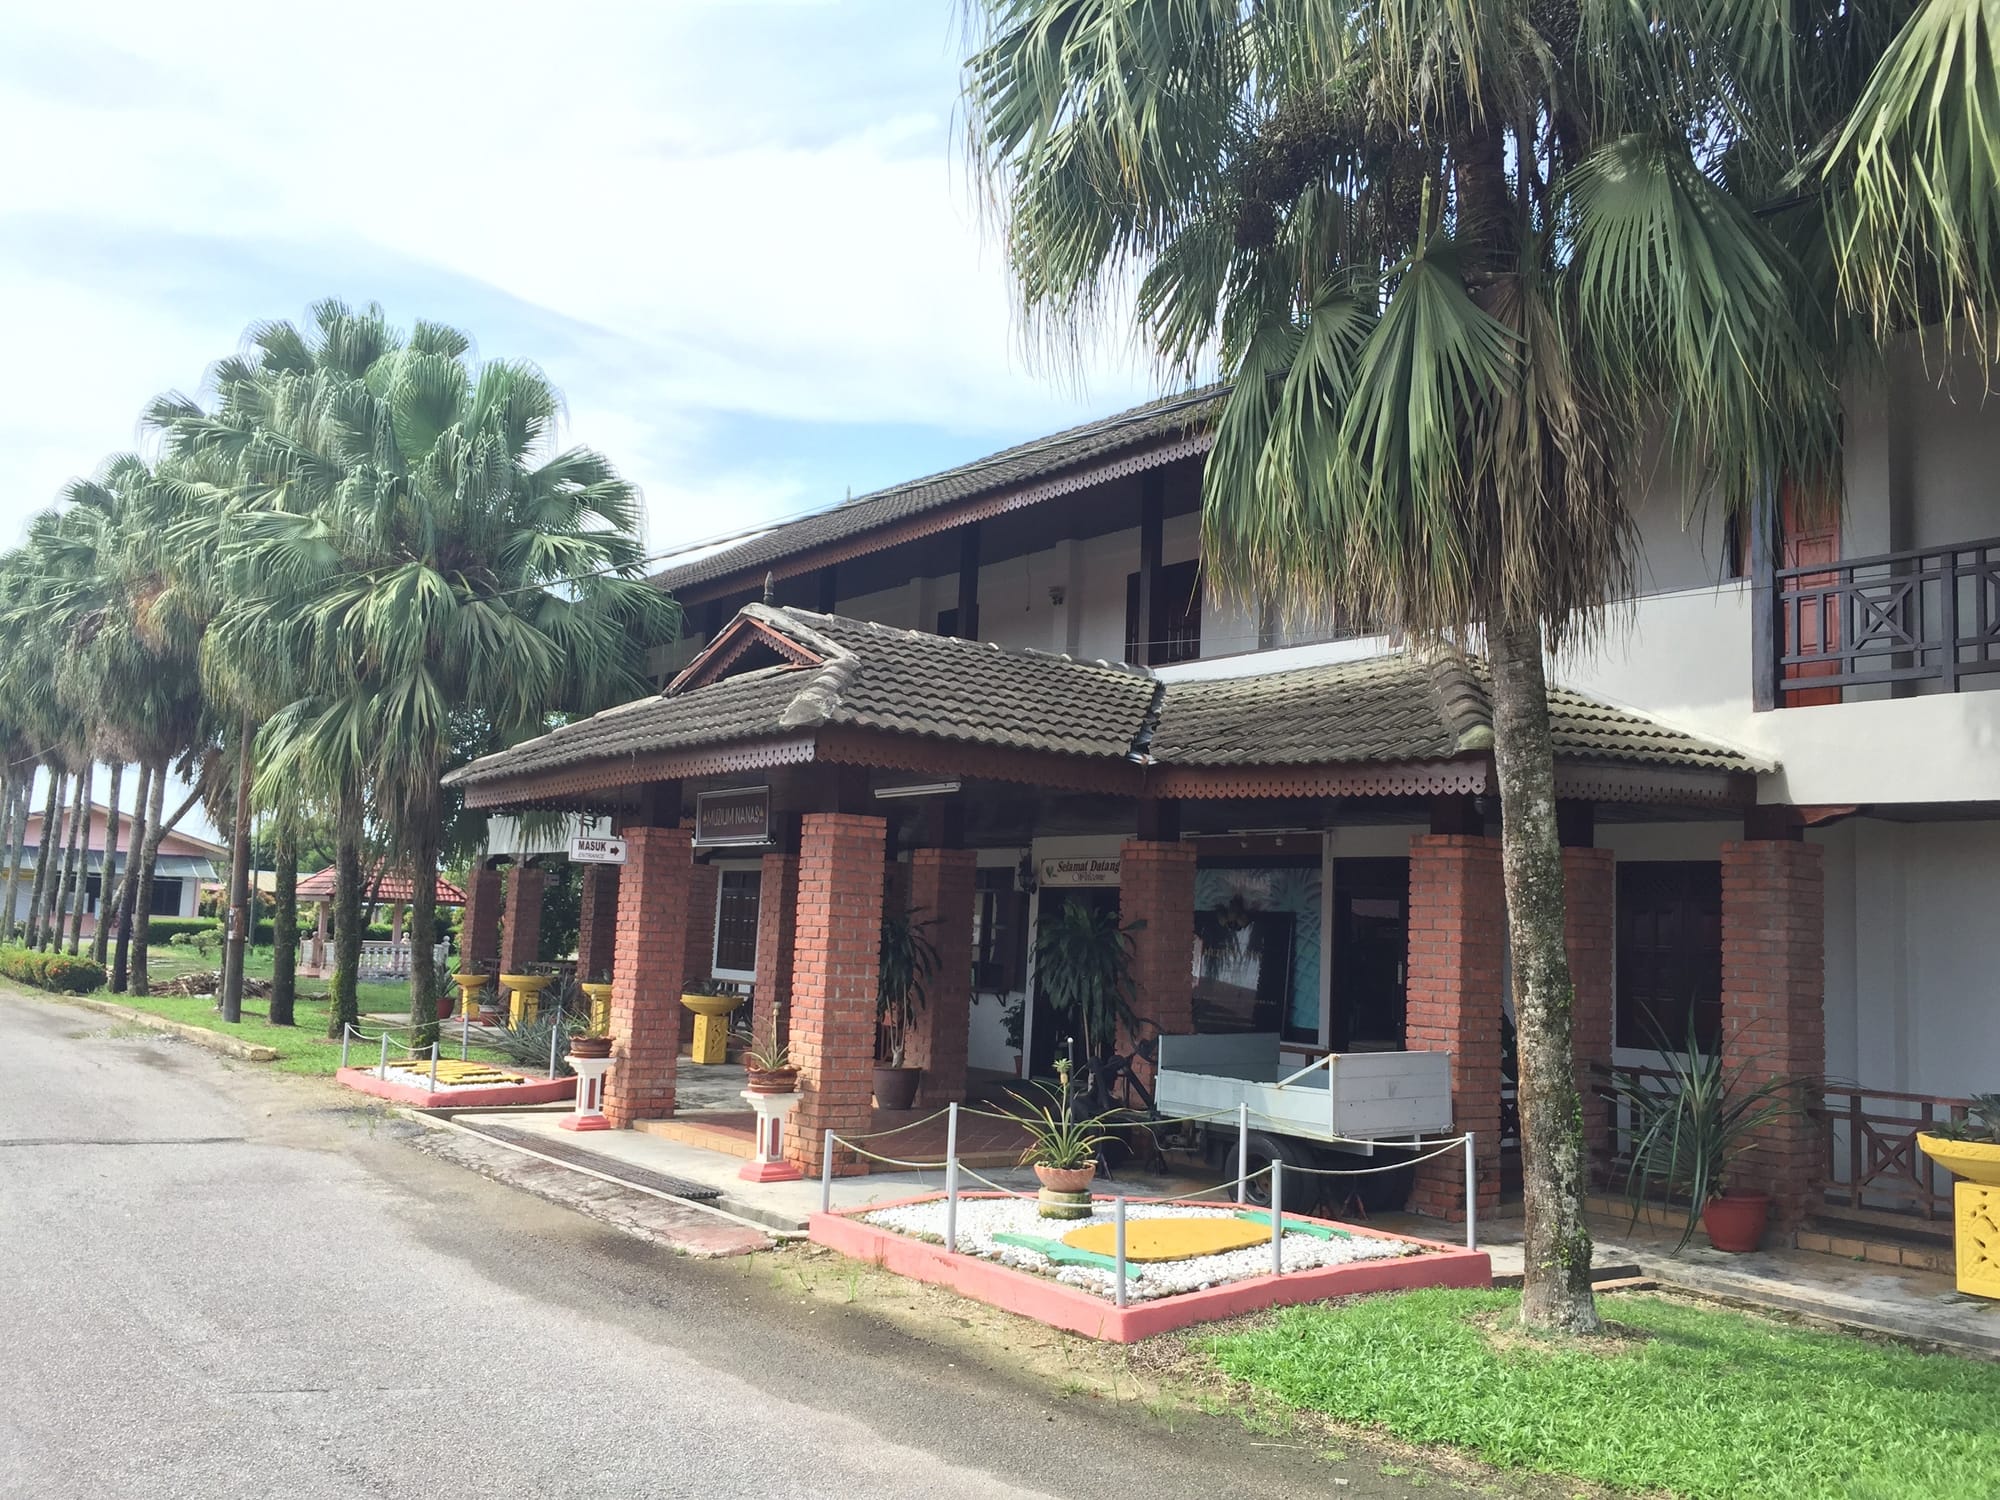 Photo by Author — Muzium Nanas (Pineapple Museum), Johor, Malaysia